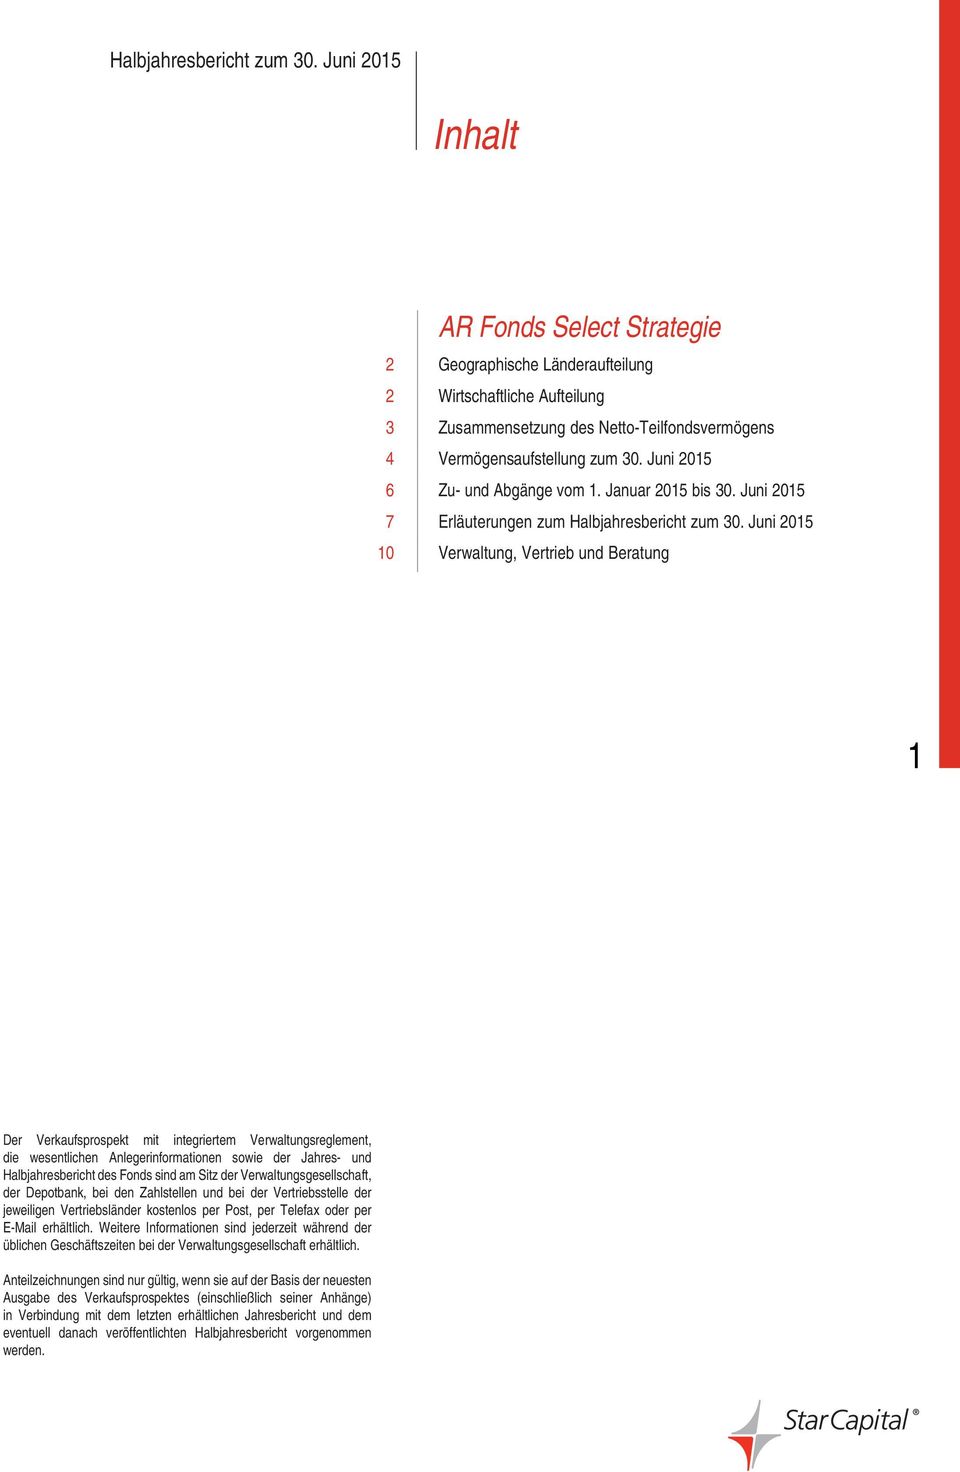 Juni 2015 10 Verwaltung, Vertrieb und Beratung 1 Der Verkaufsprospekt mit integriertem Verwaltungsreglement, die wesentlichen Anlegerinformationen sowie der Jahres- und Halbjahresbericht des Fonds